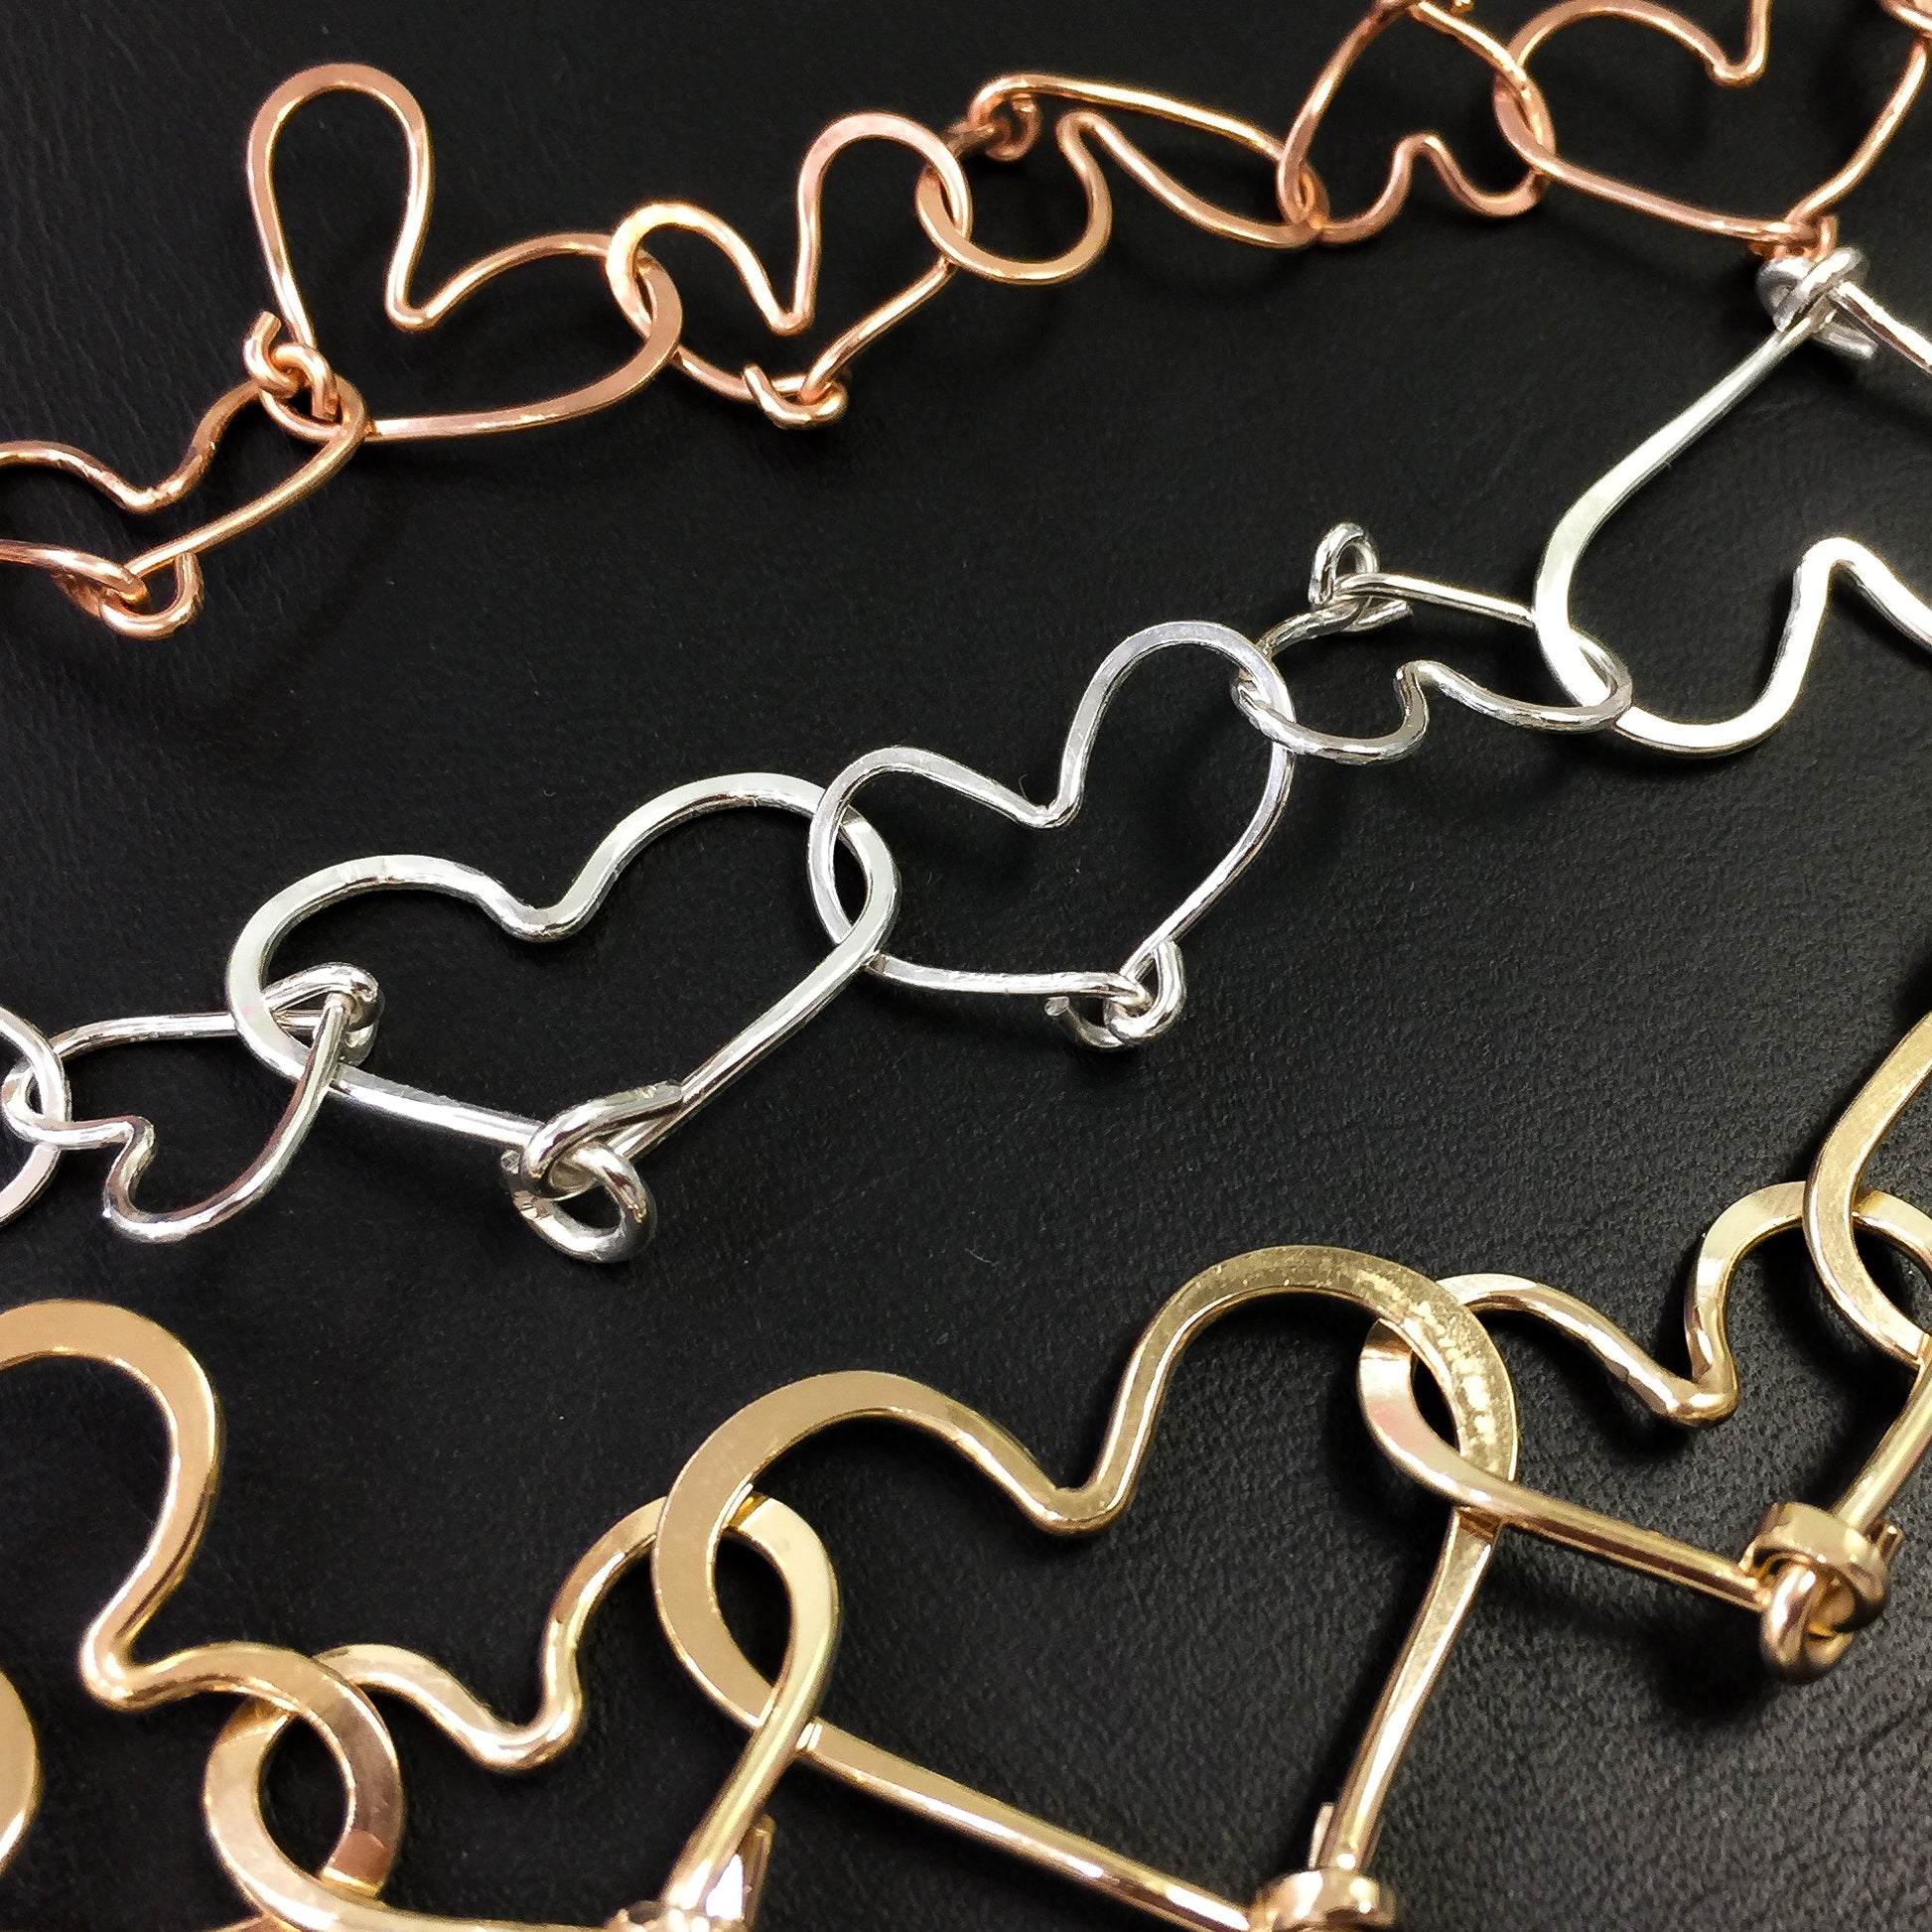 16 Gauge Round Half Hard 14/20 Gold Filled Wire: Wire Jewelry, Wire Wrap  Tutorials